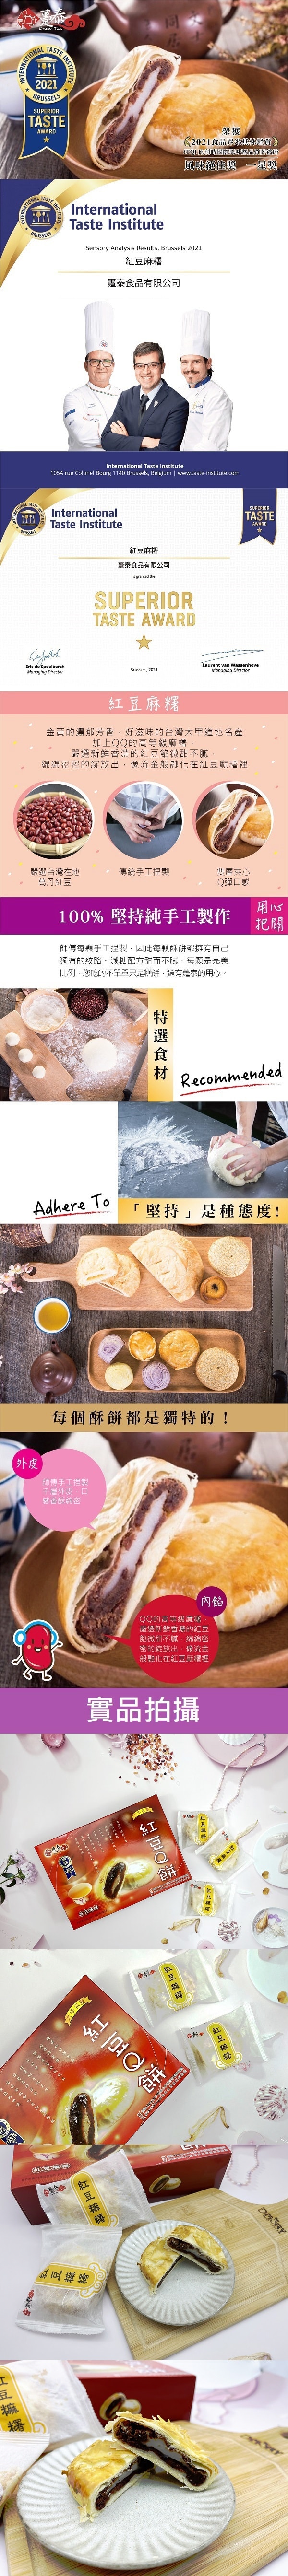 [台湾直邮] 台湾趸泰食品 红豆Q饼 700g 10入 (保质期:2024/5/23)